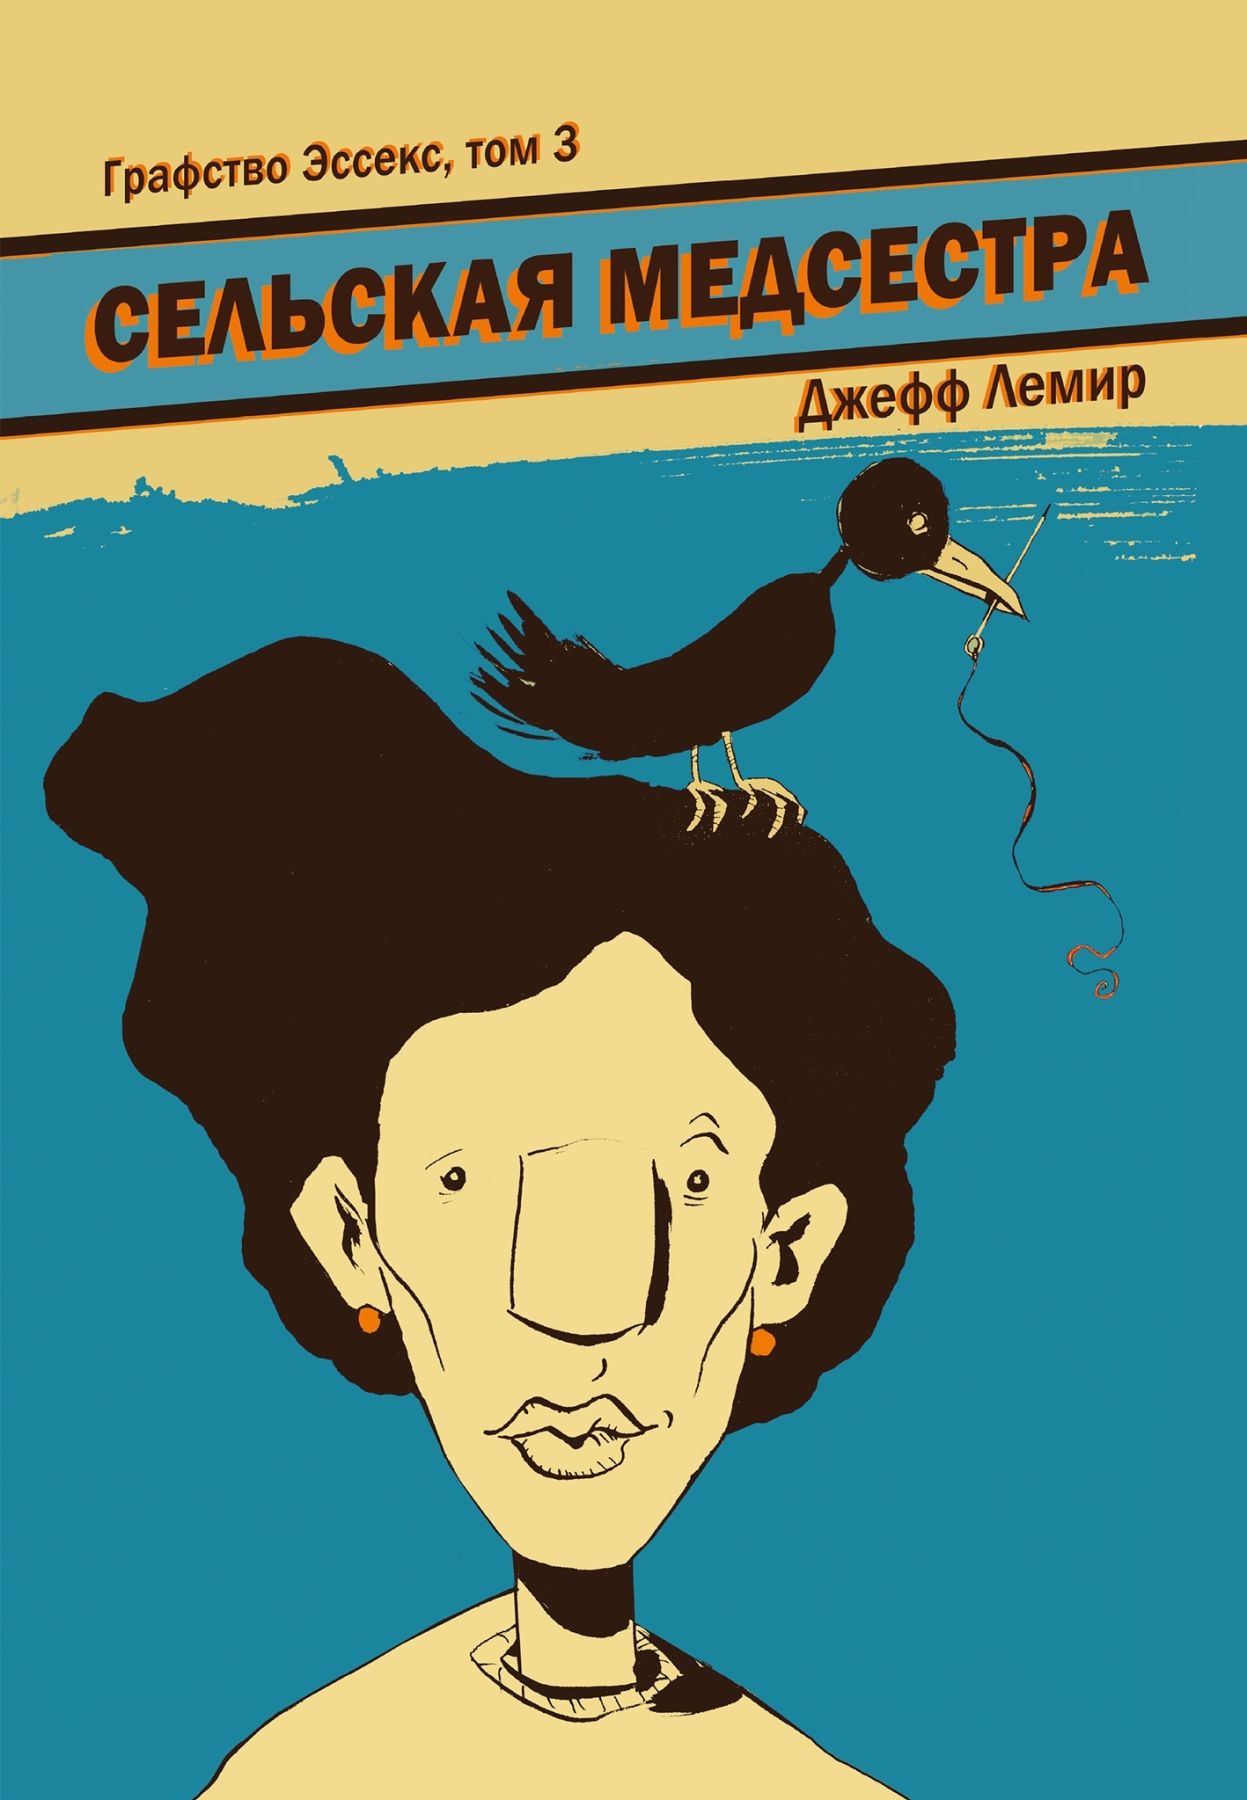 Комикс на русском языке «Графство Эссекс. Том 3. Сельская медсестра»